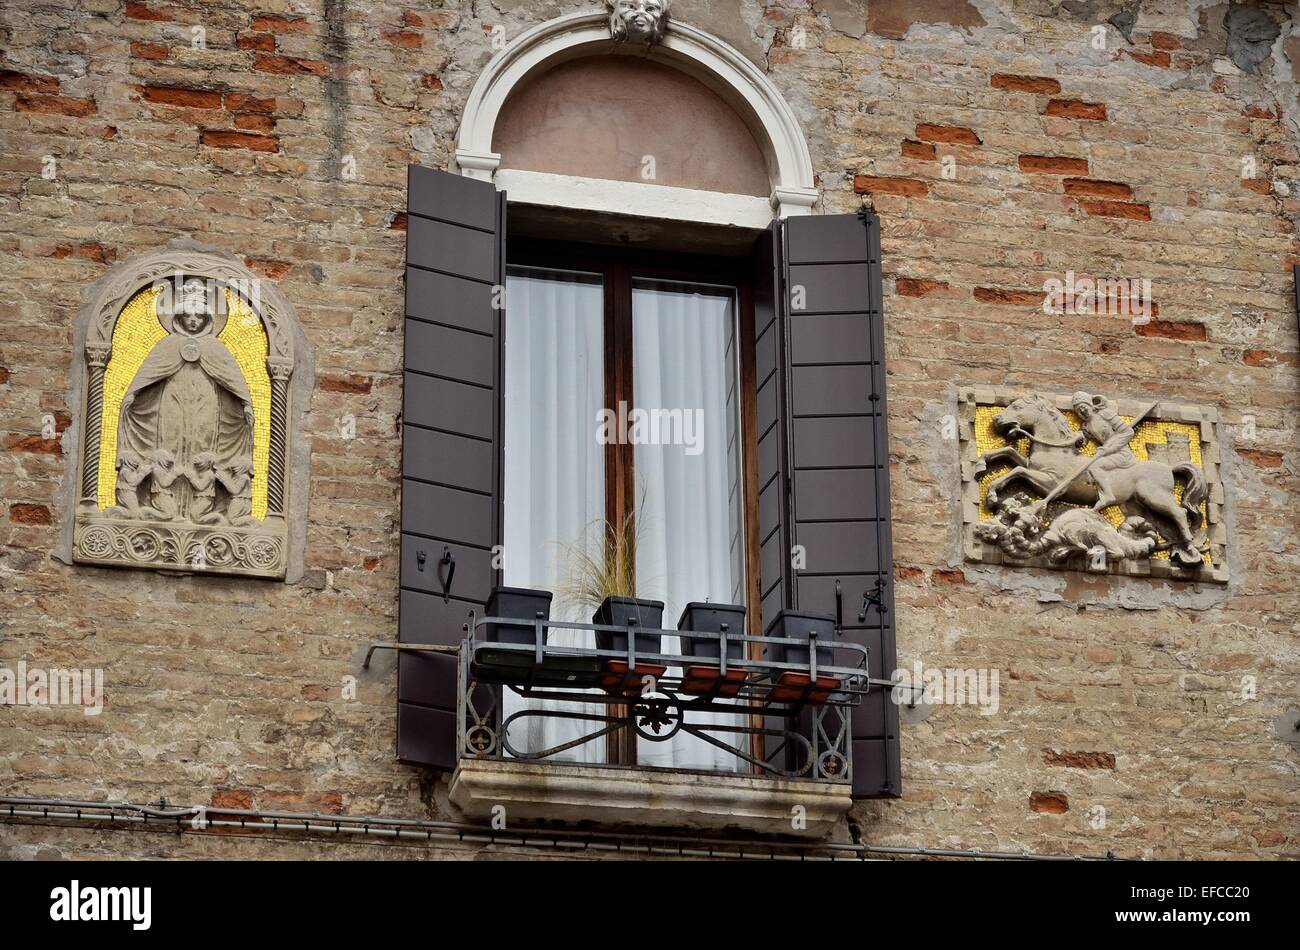 Vieux bâtiments typiques de Venise. Banque D'Images